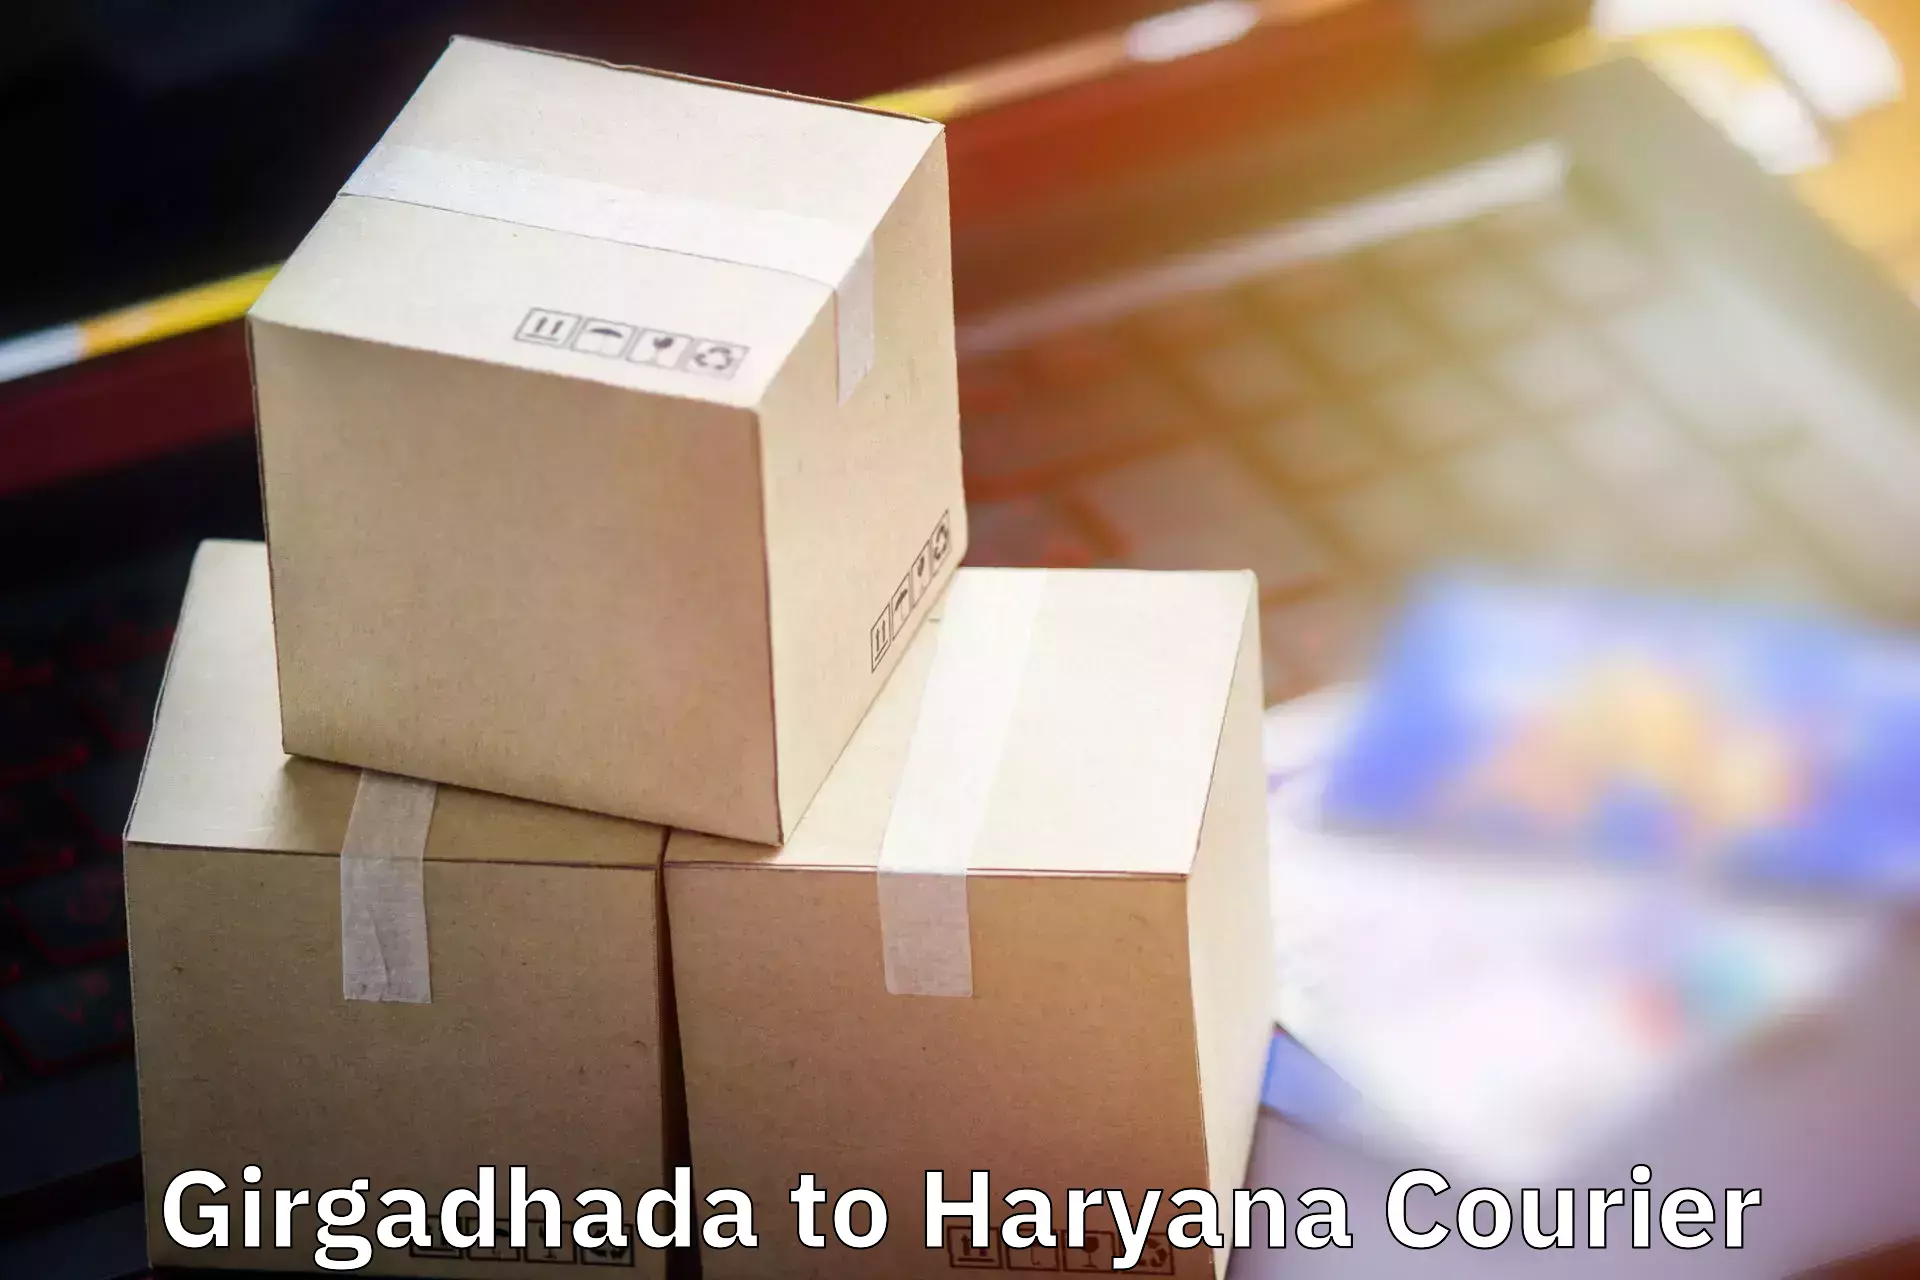 Luggage shipping service Girgadhada to Gurugram